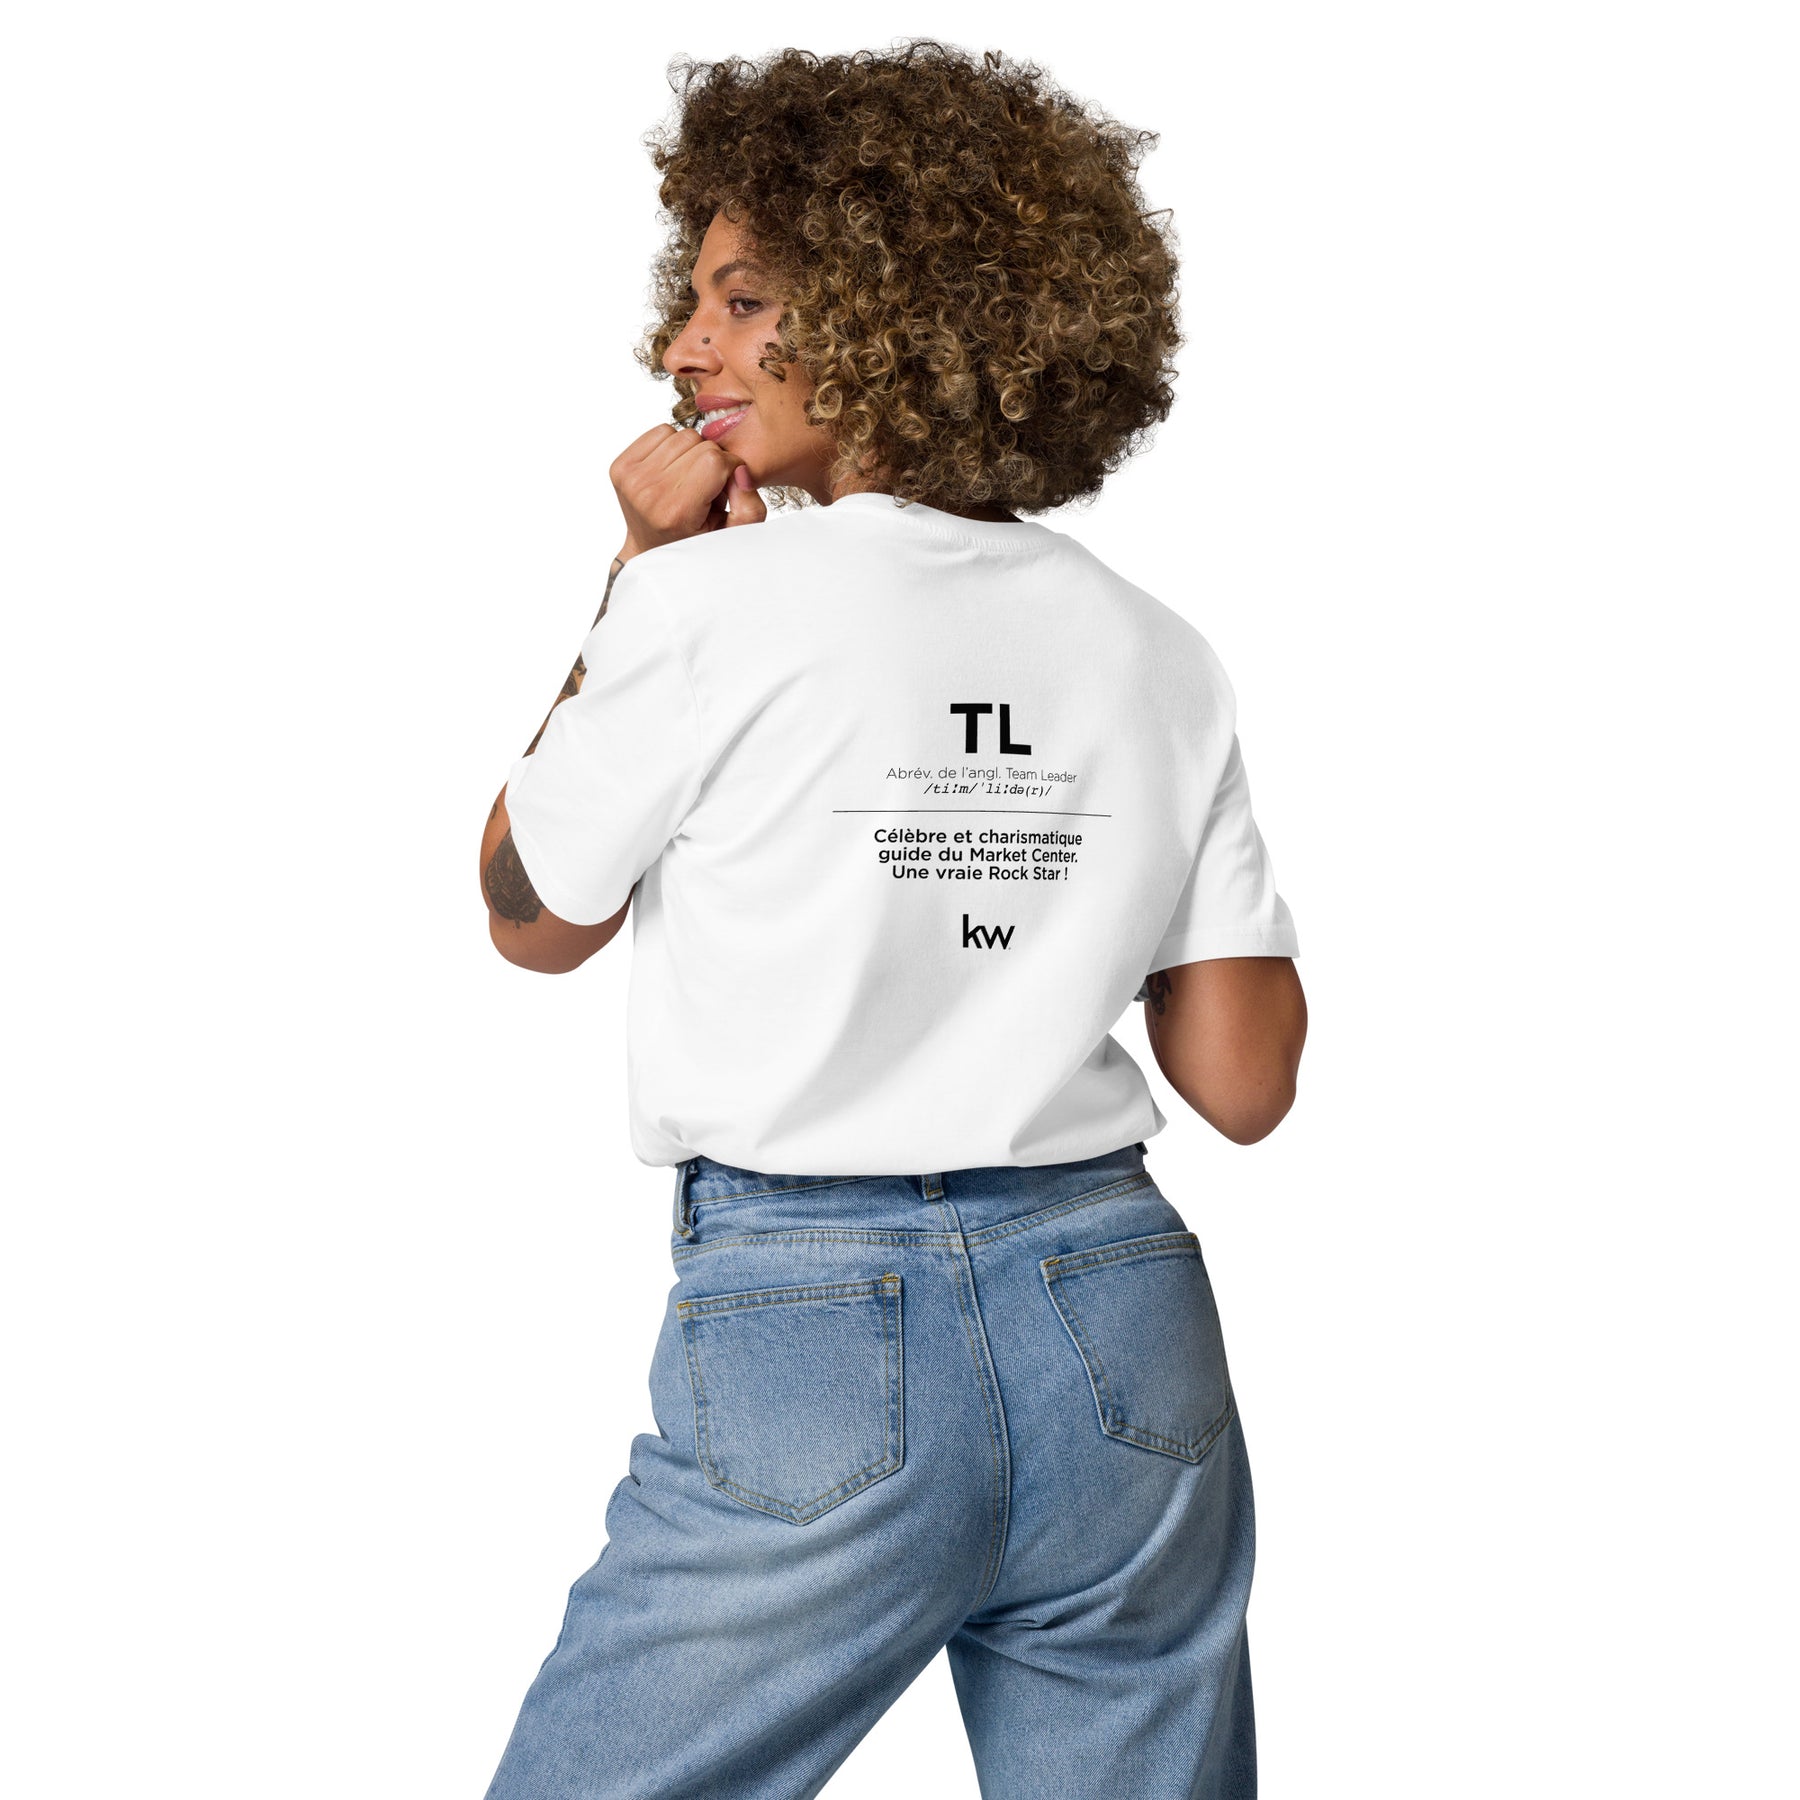 T-shirt Premium unisexe - Core Group - TL